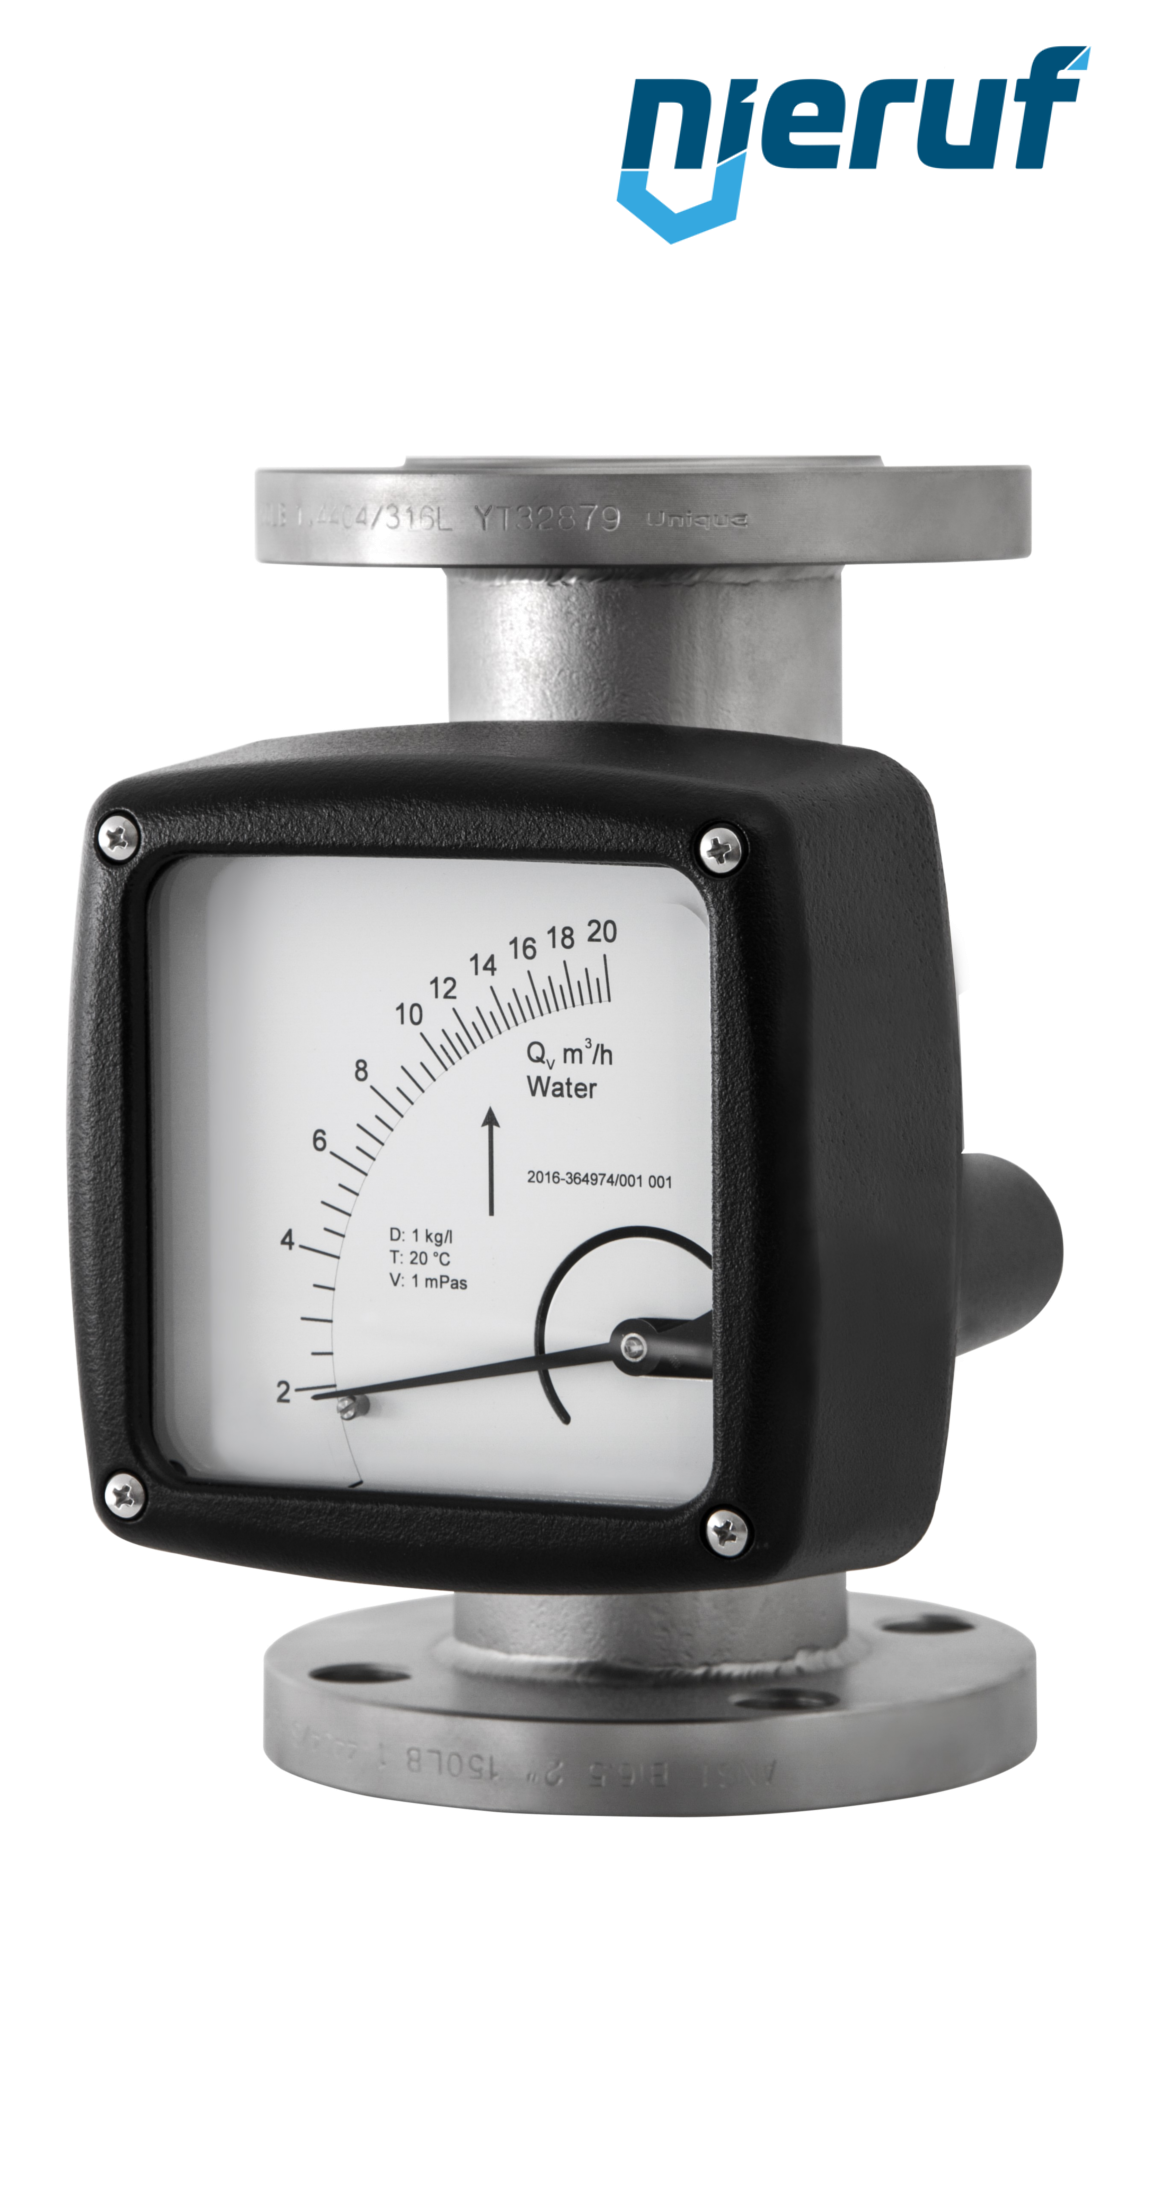 misuratore di portata / flussometro flangiato DN100-attacco 240,0 - 2400,0 m3/h tubo DN100 aria